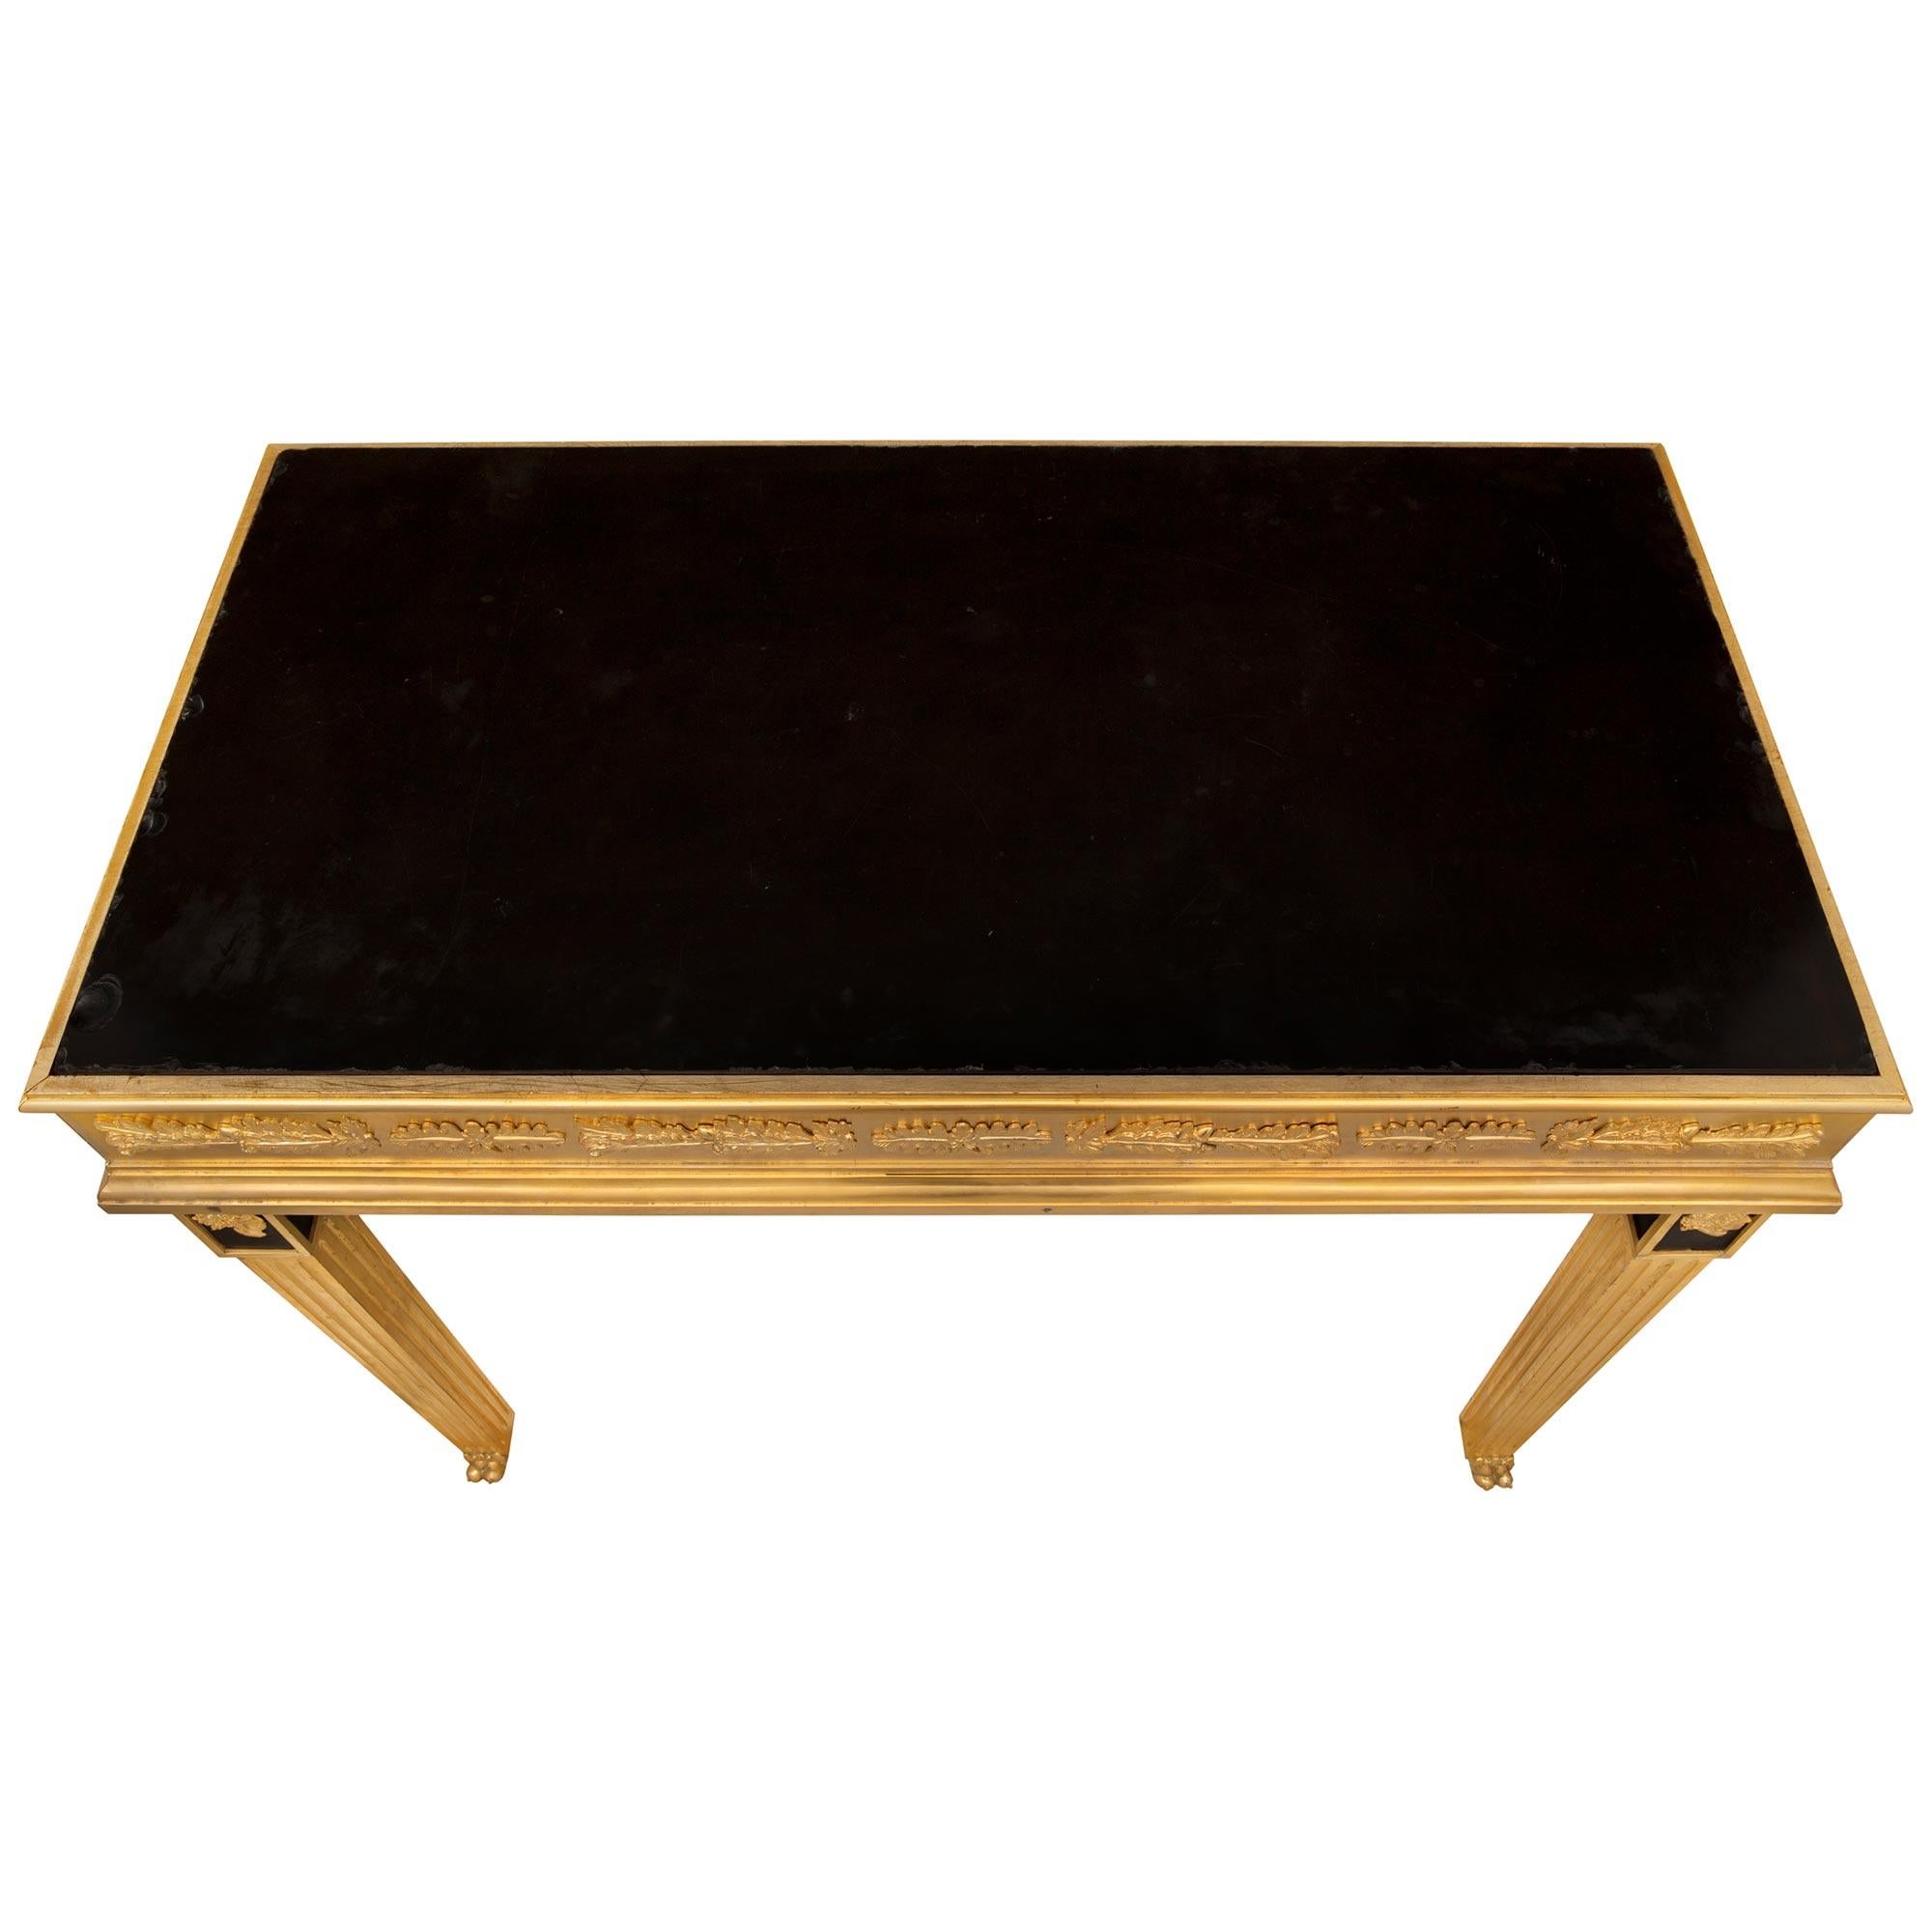 Superbe table de centre néo-classique italienne du 19ème siècle, de très haute qualité, en bronze doré et marbre noir belge. La table de forme rectangulaire est surélevée par de beaux pieds carrés fuselés cannelés avec d'impressionnants pieds pattes